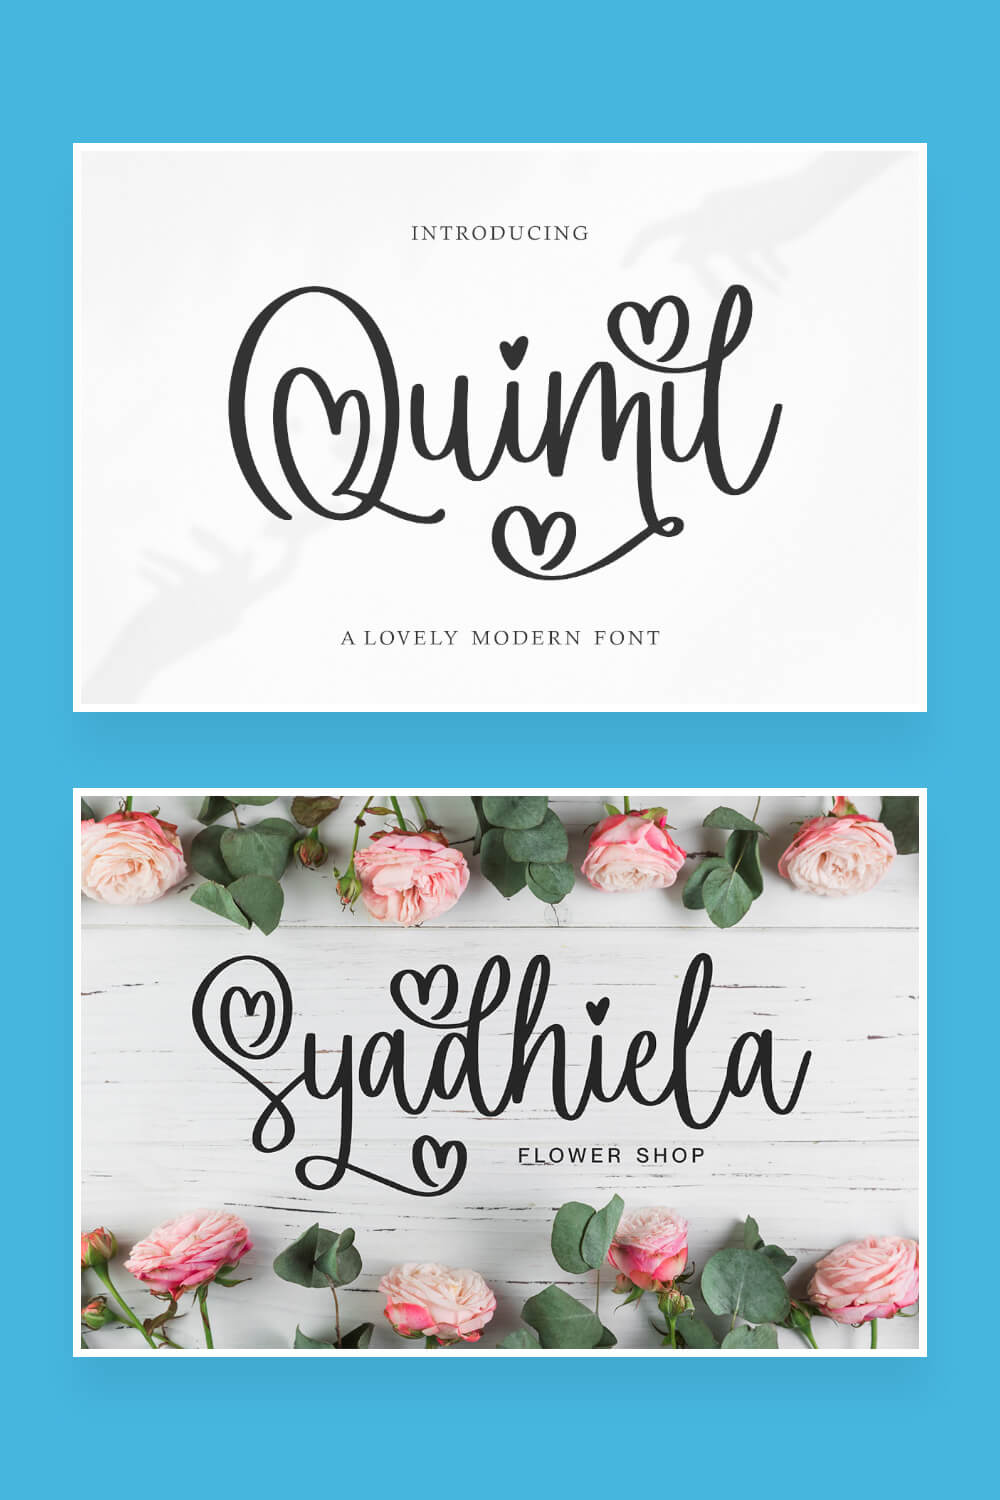 quimil a lovely modern handwritten font pinterest image.